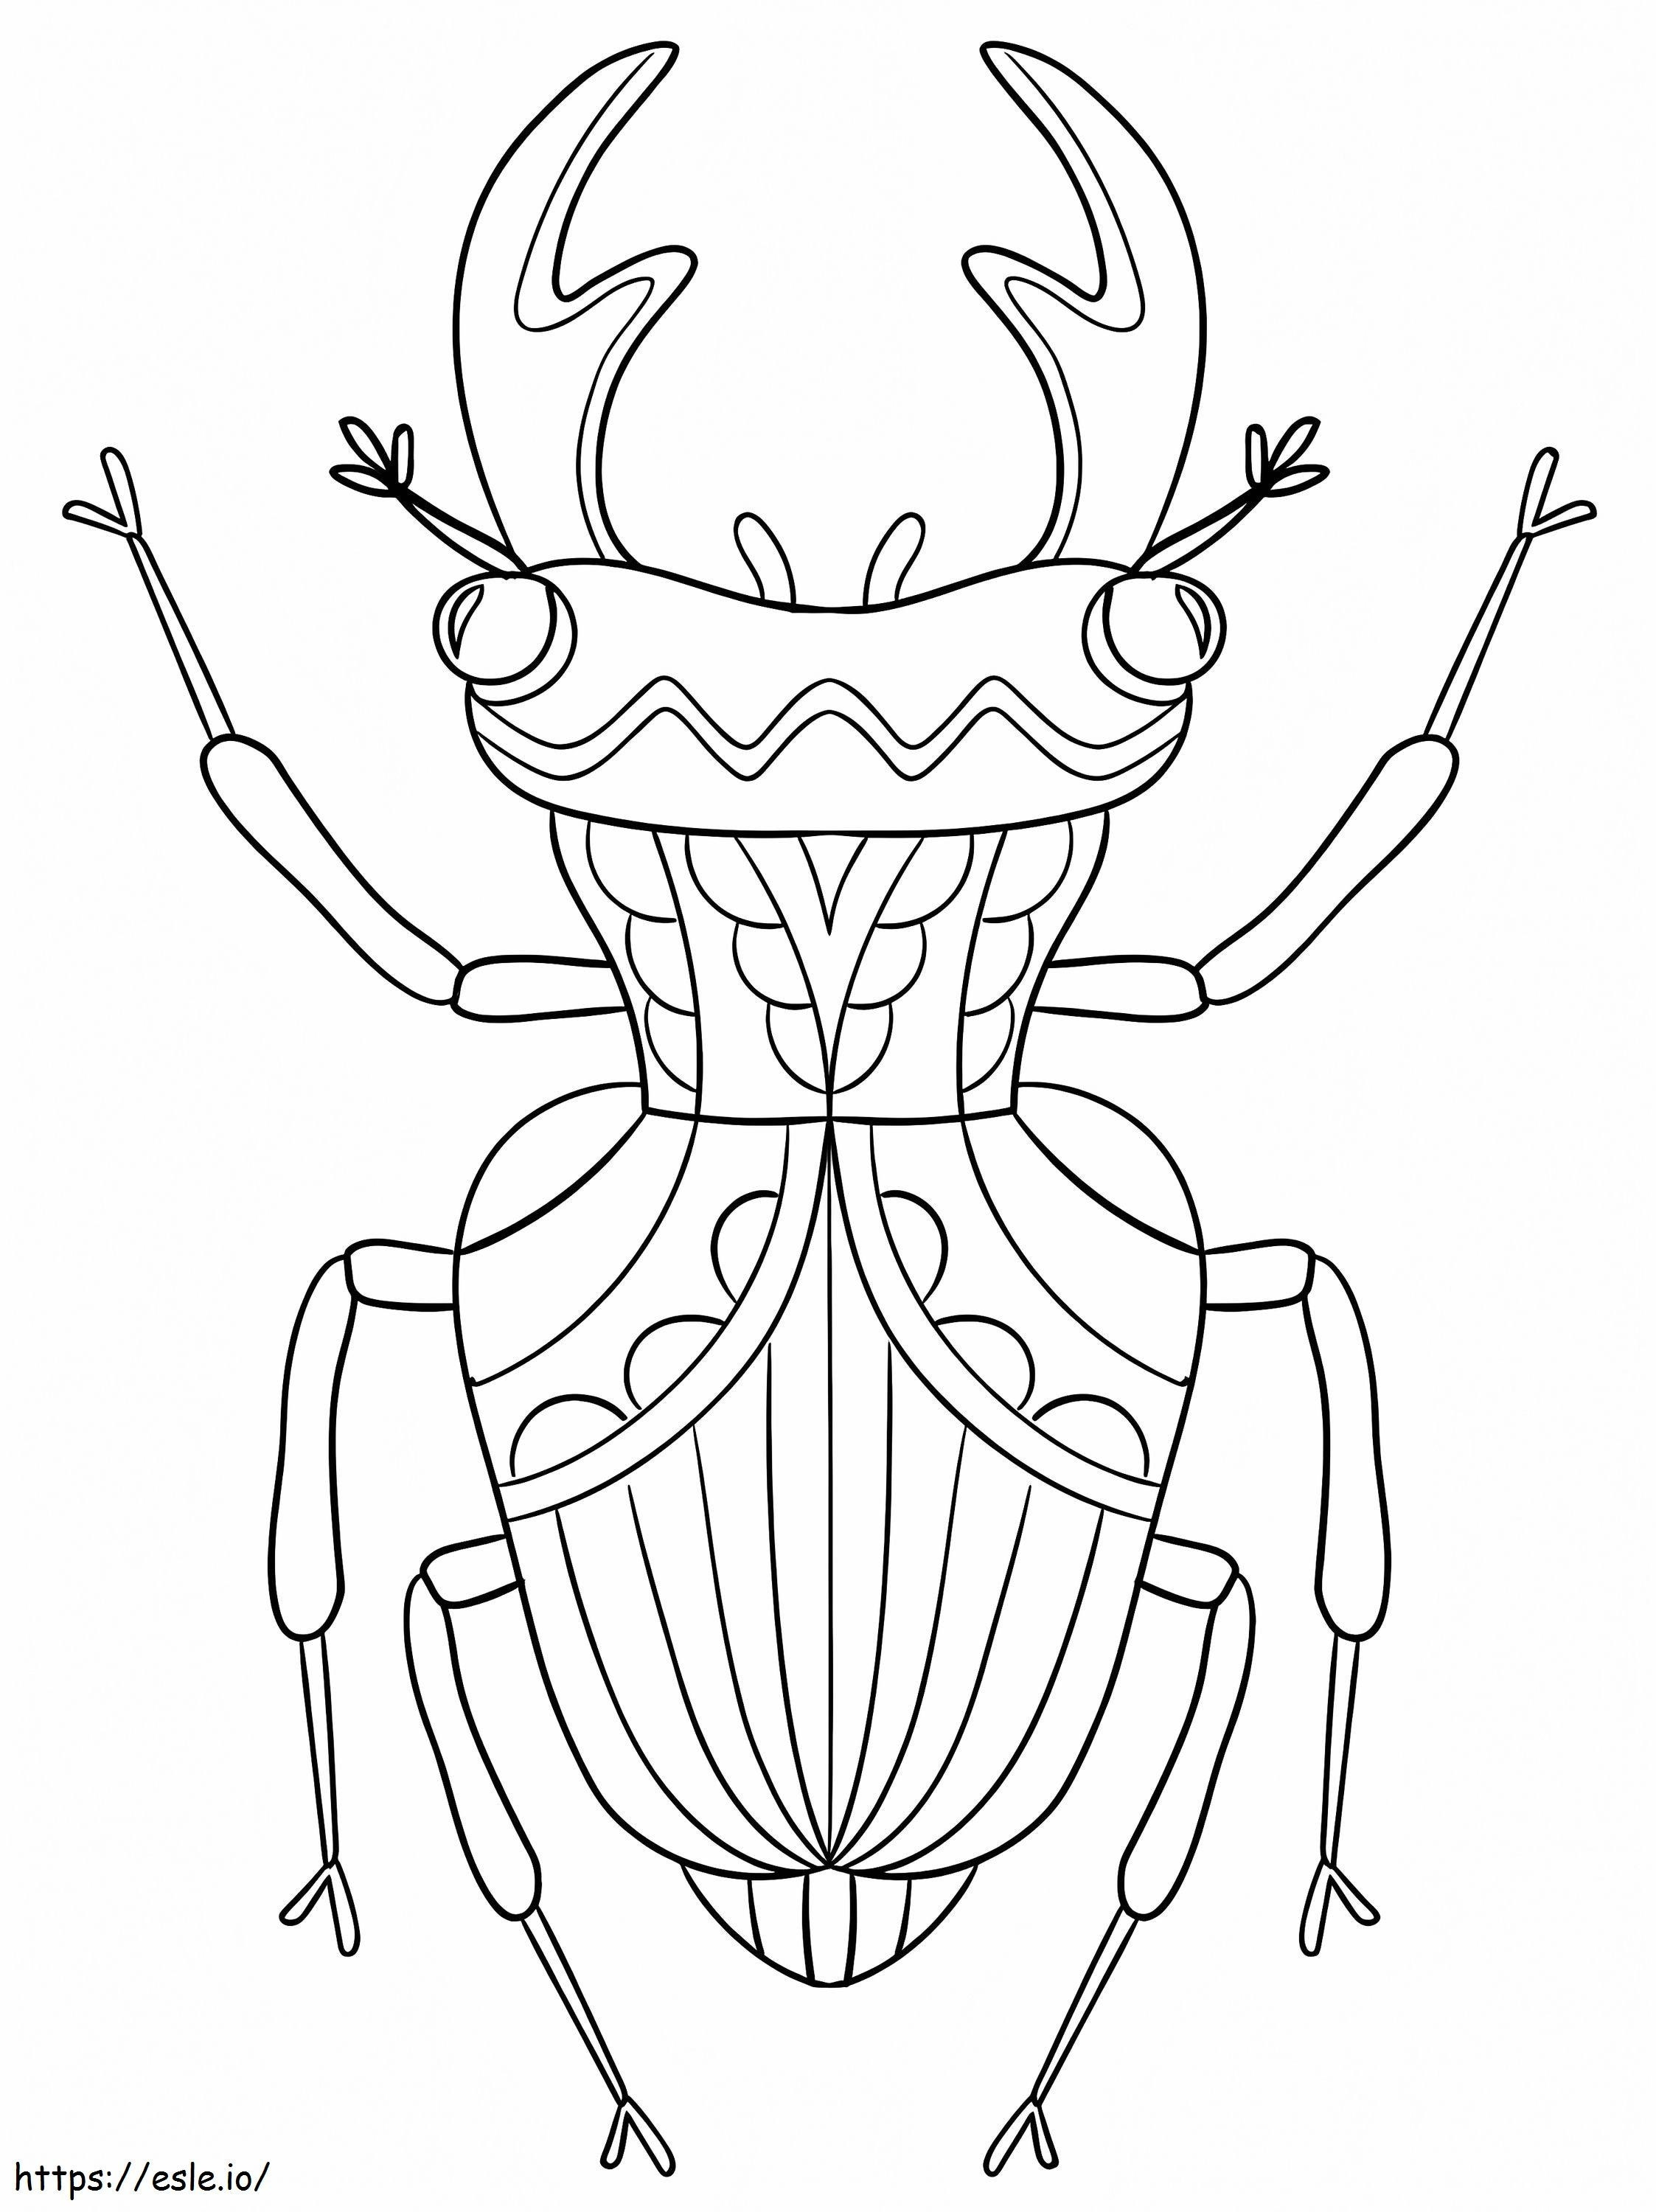 Bello scarabeo da colorare